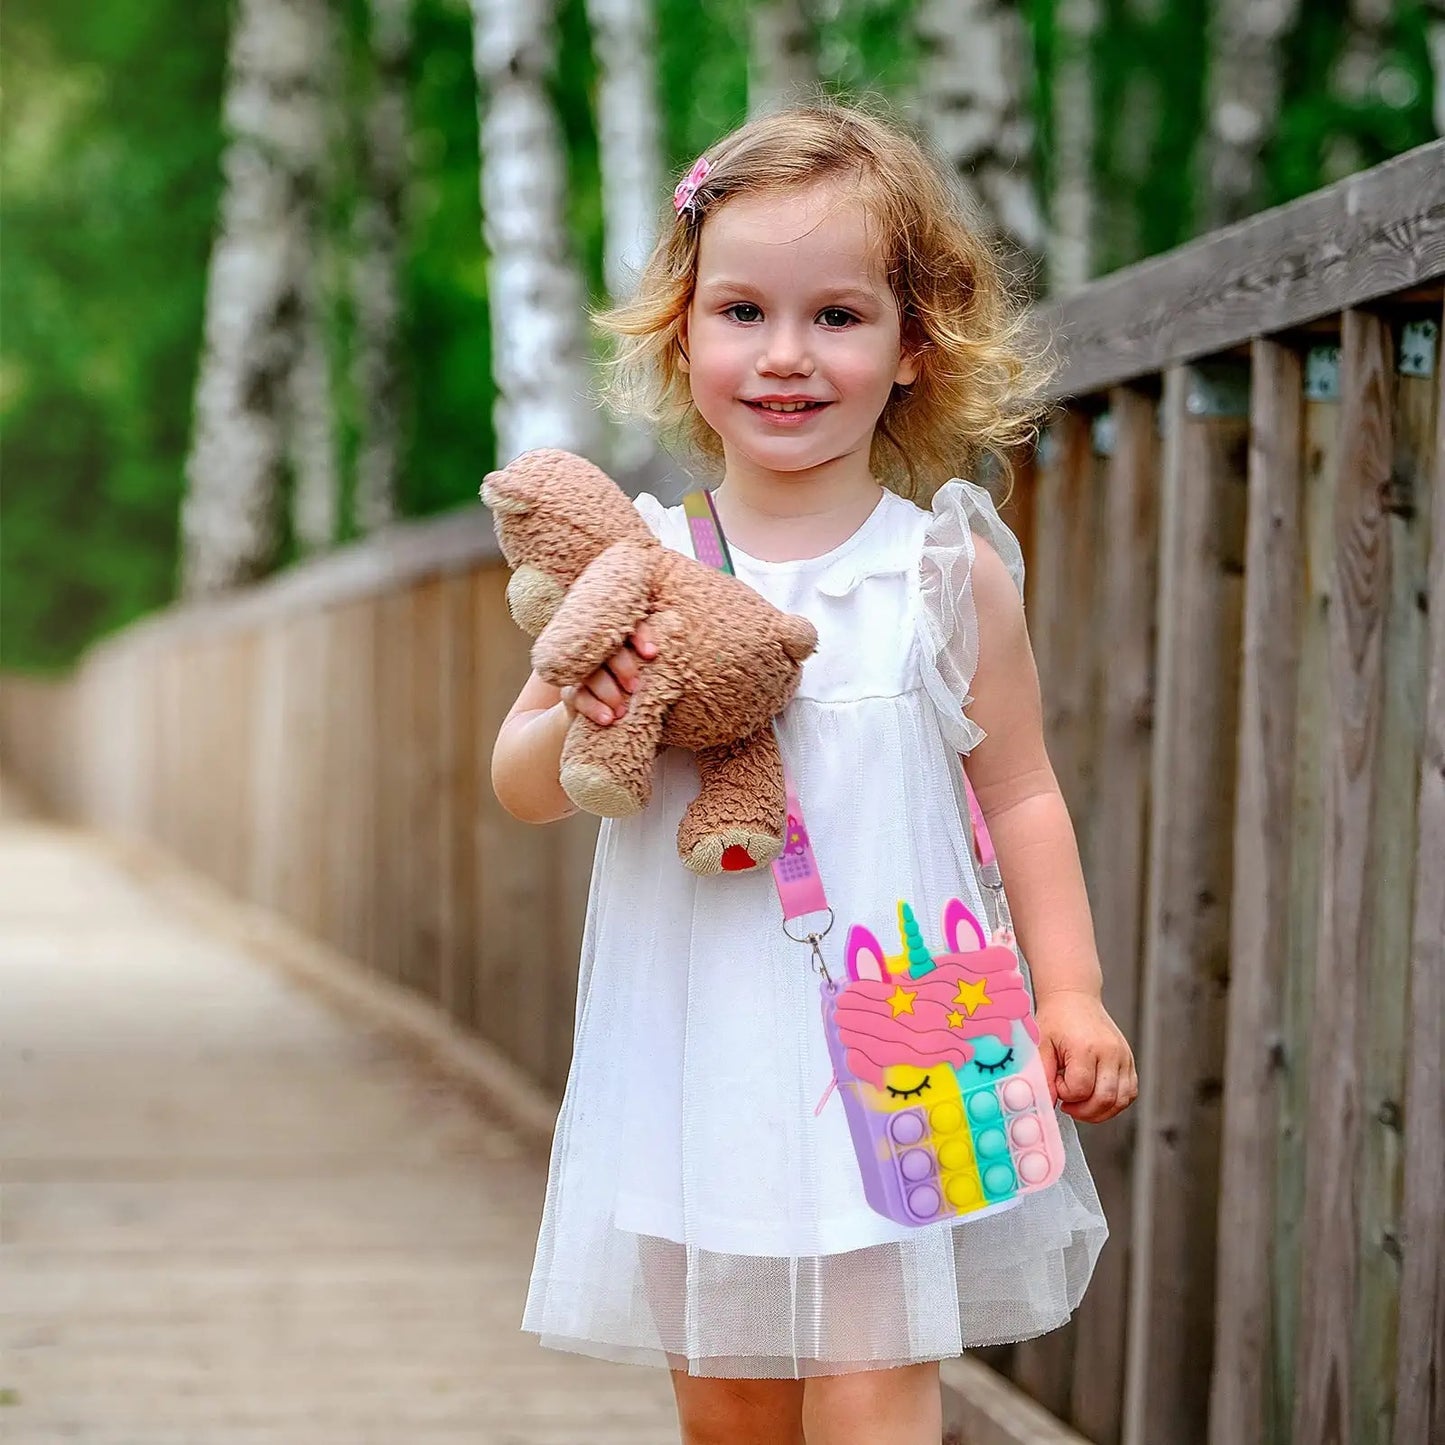 Girl Unicorn Pop Purse | Pop Bag With Unicorn Pop Toy, Shoulder Bag Fidget Toys | Pop Fidget bag